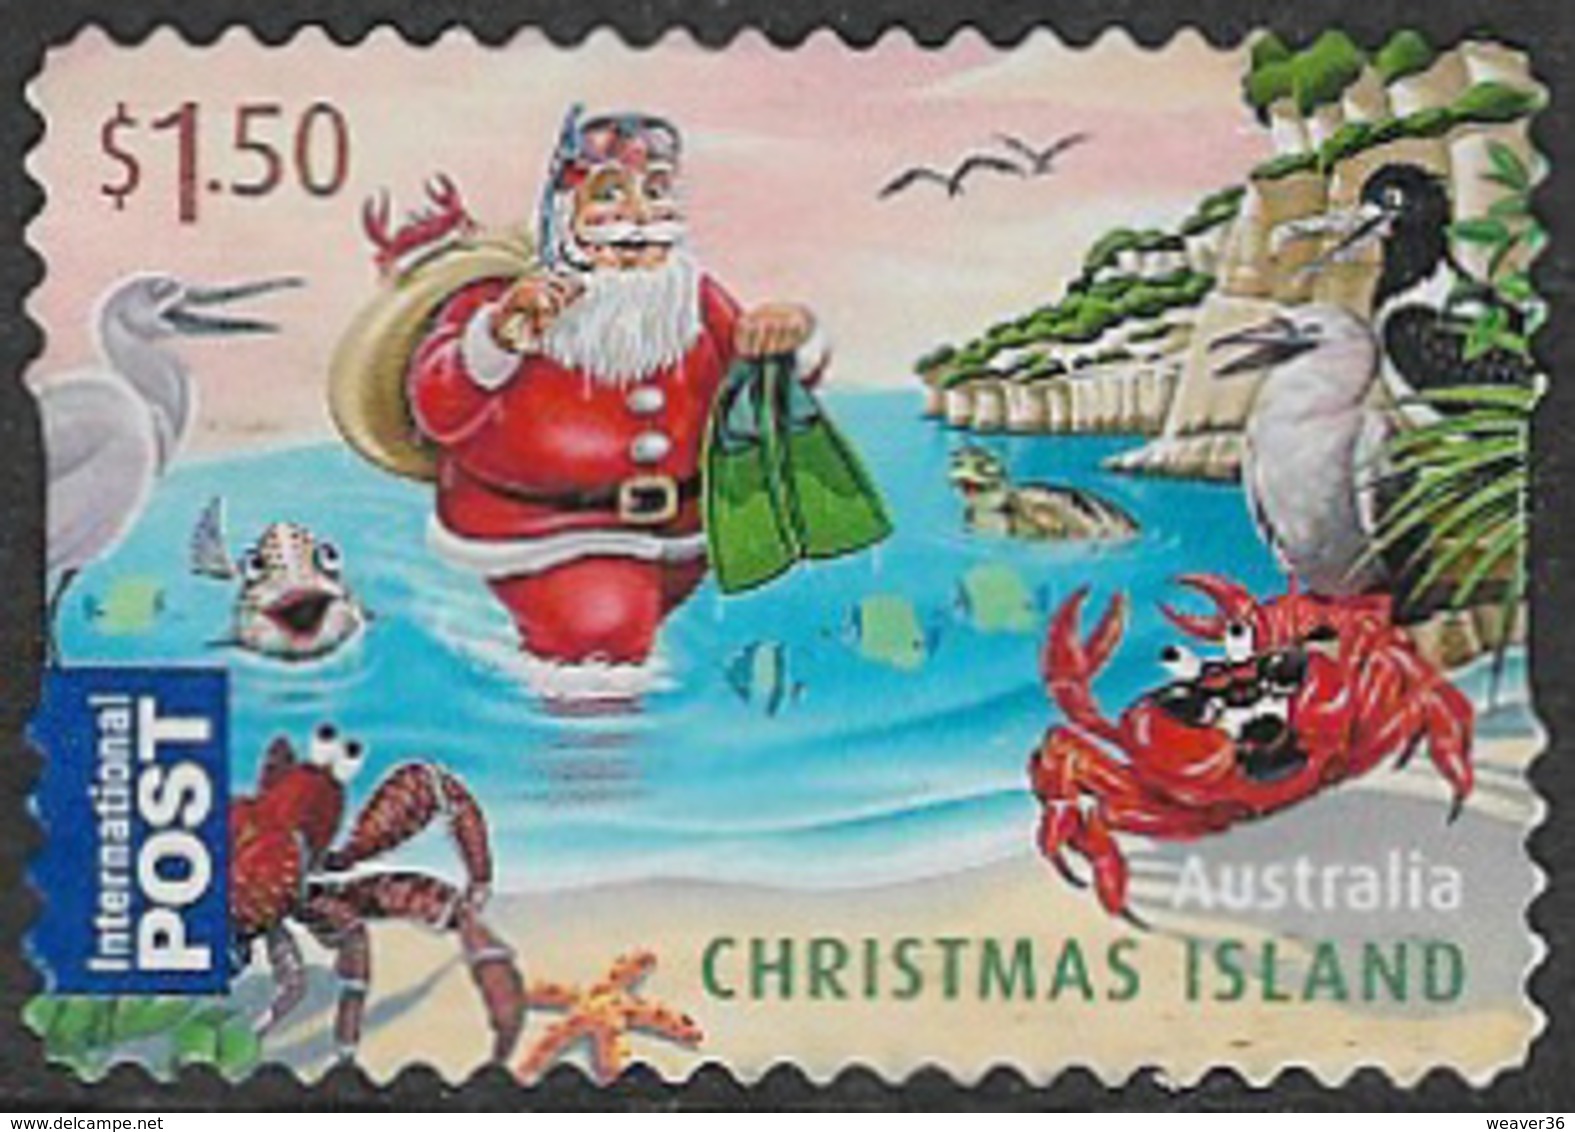 Christmas Island 2011 Christmas $1.50 Self Adhesive Good/fine Used [17/16563/ND] - Christmas Island